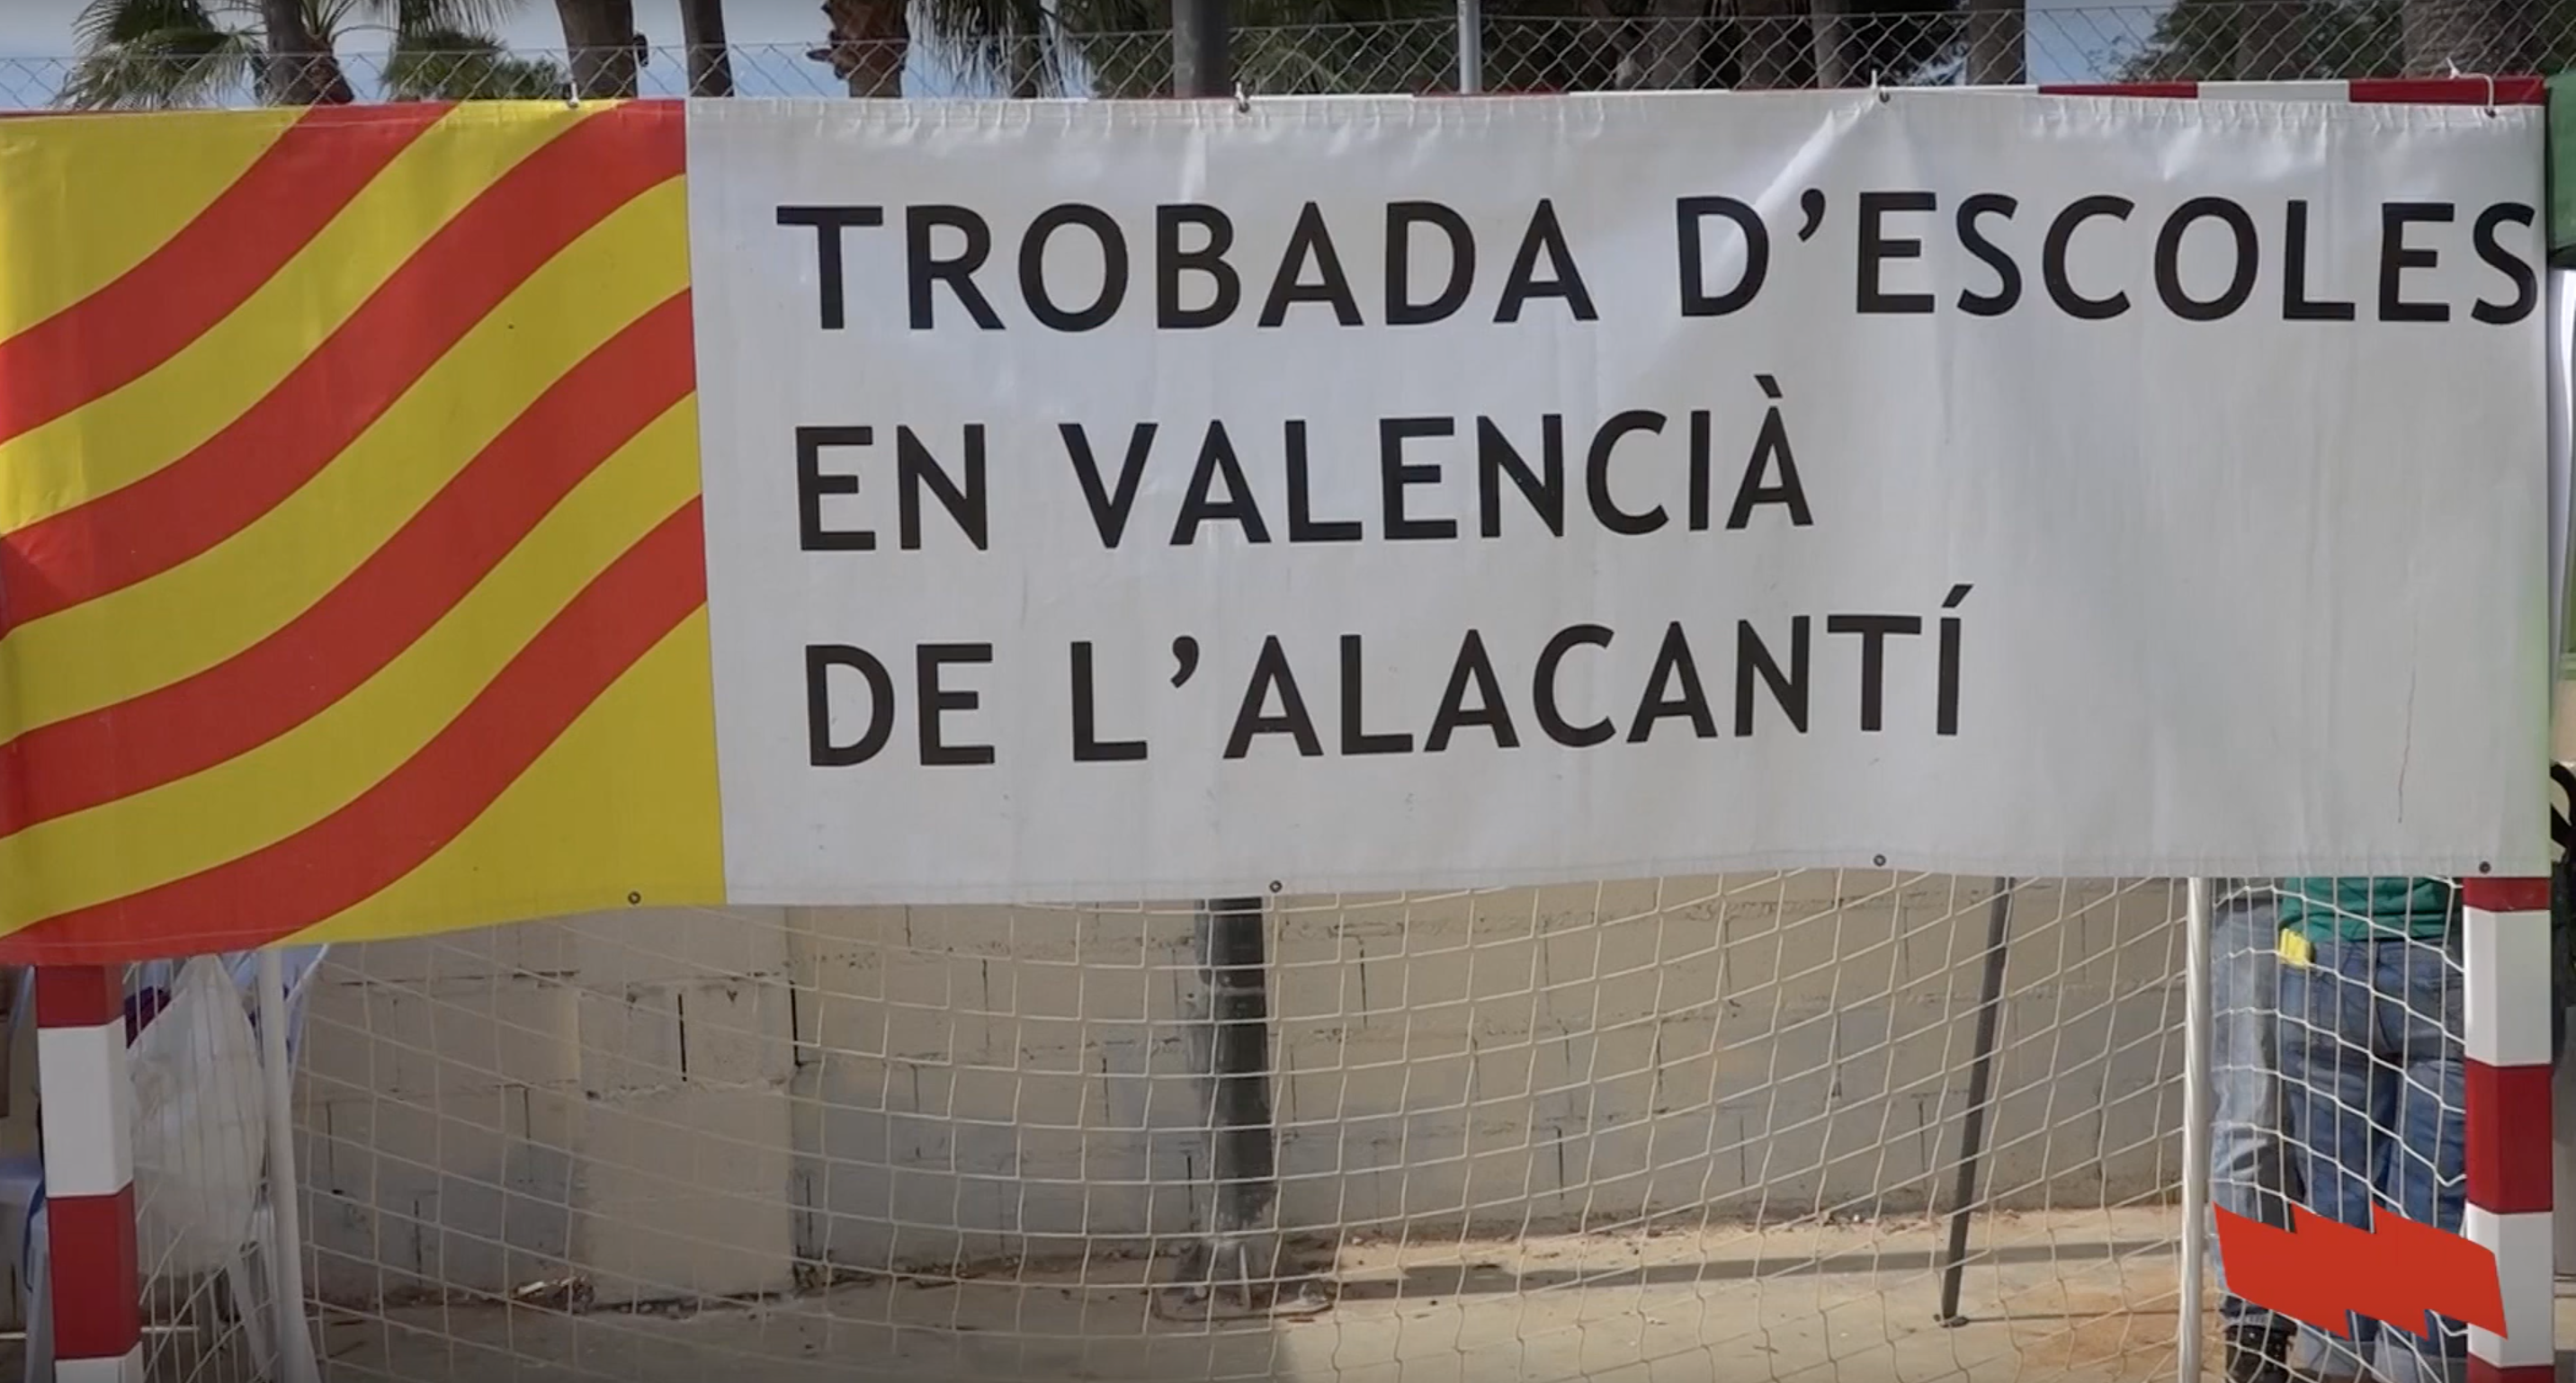 La Trobada d’escoles en valencià de Sant Joan reivindica llengua i medi ambient